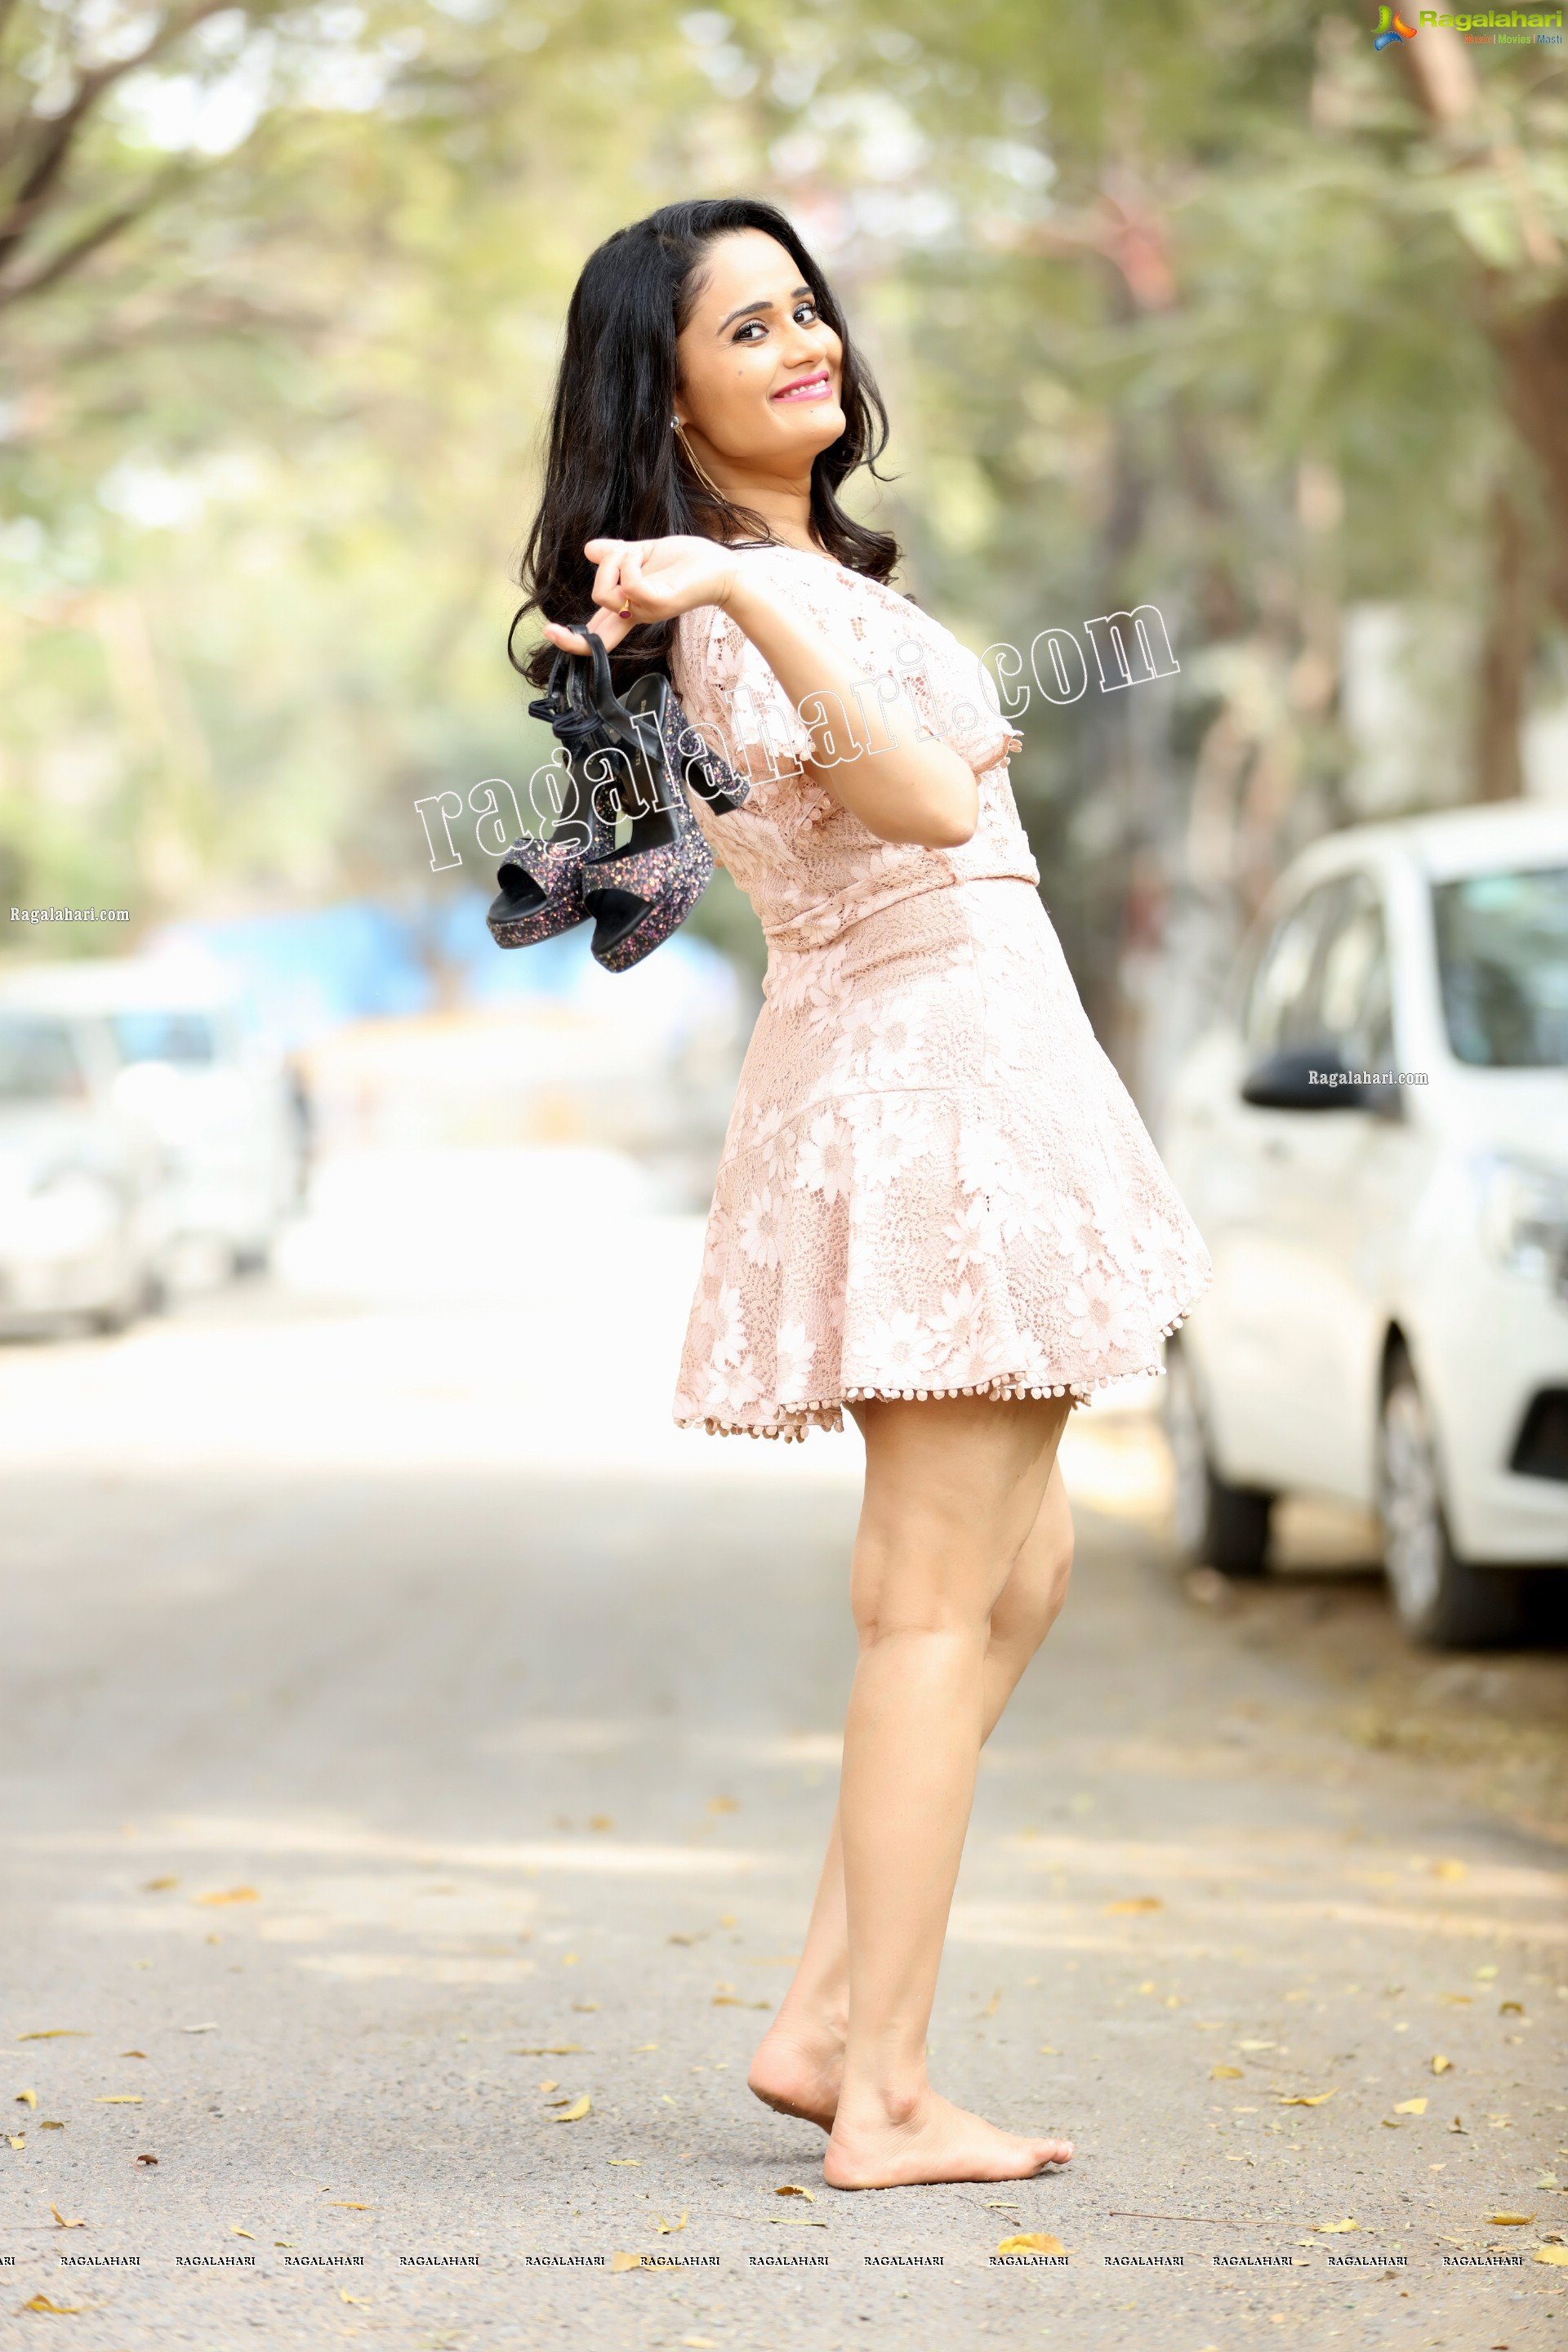 Usha Kurapati in Champagne Lace Mini Dress, Exclusive Photo Shoot